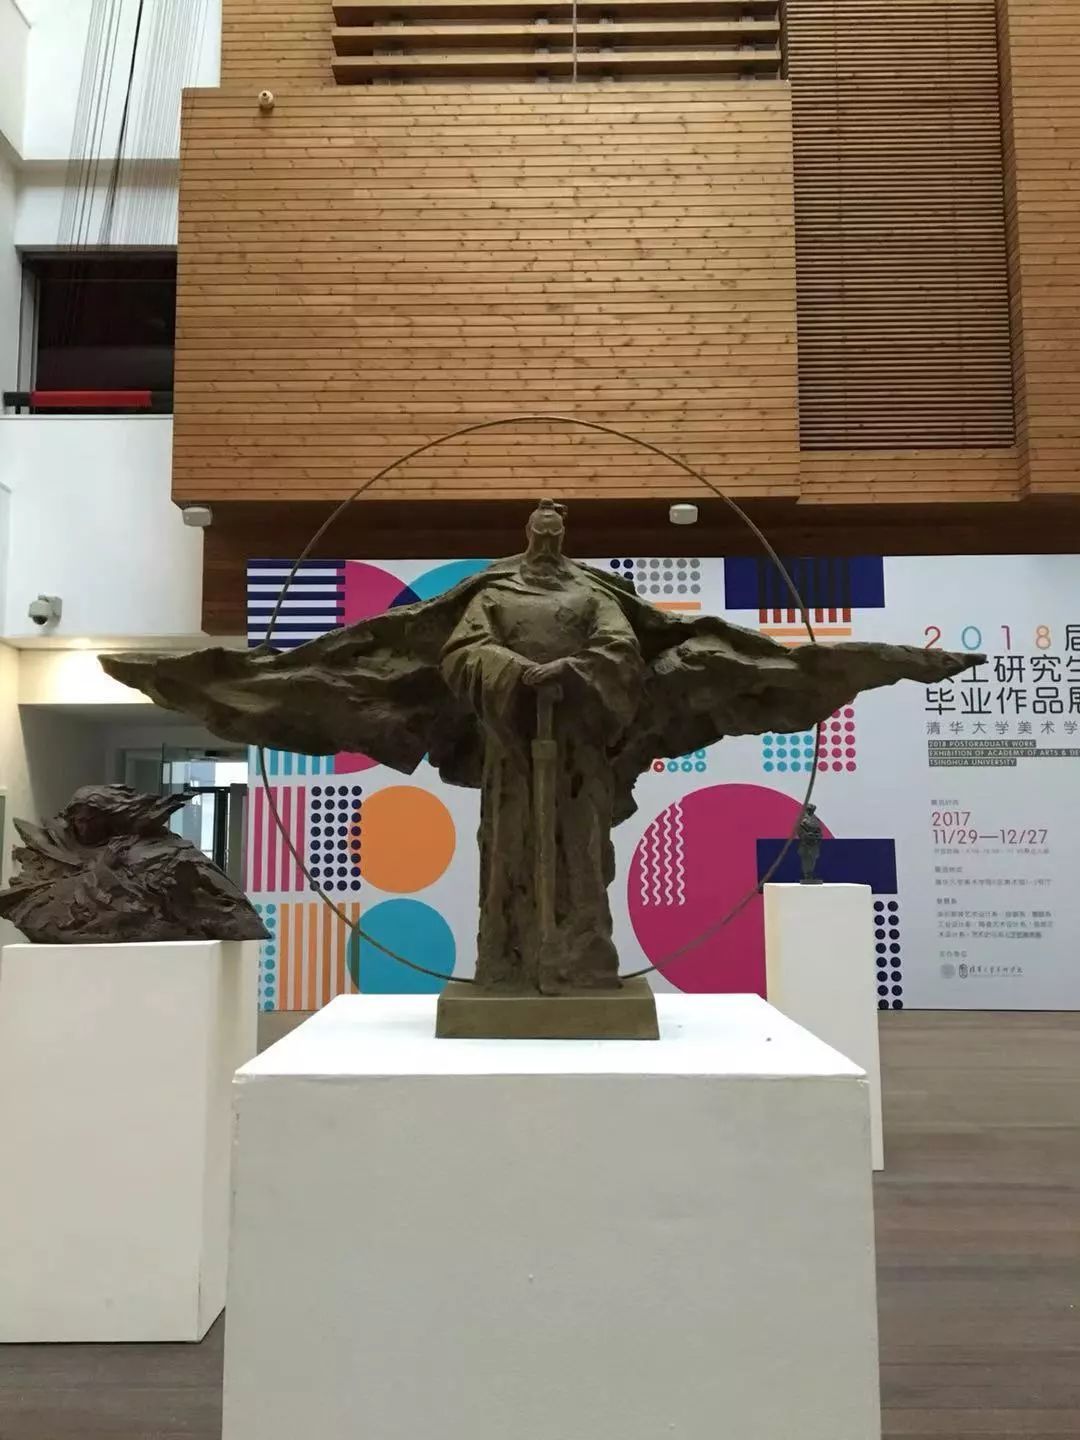 咸阳职业技术学院雕塑图片